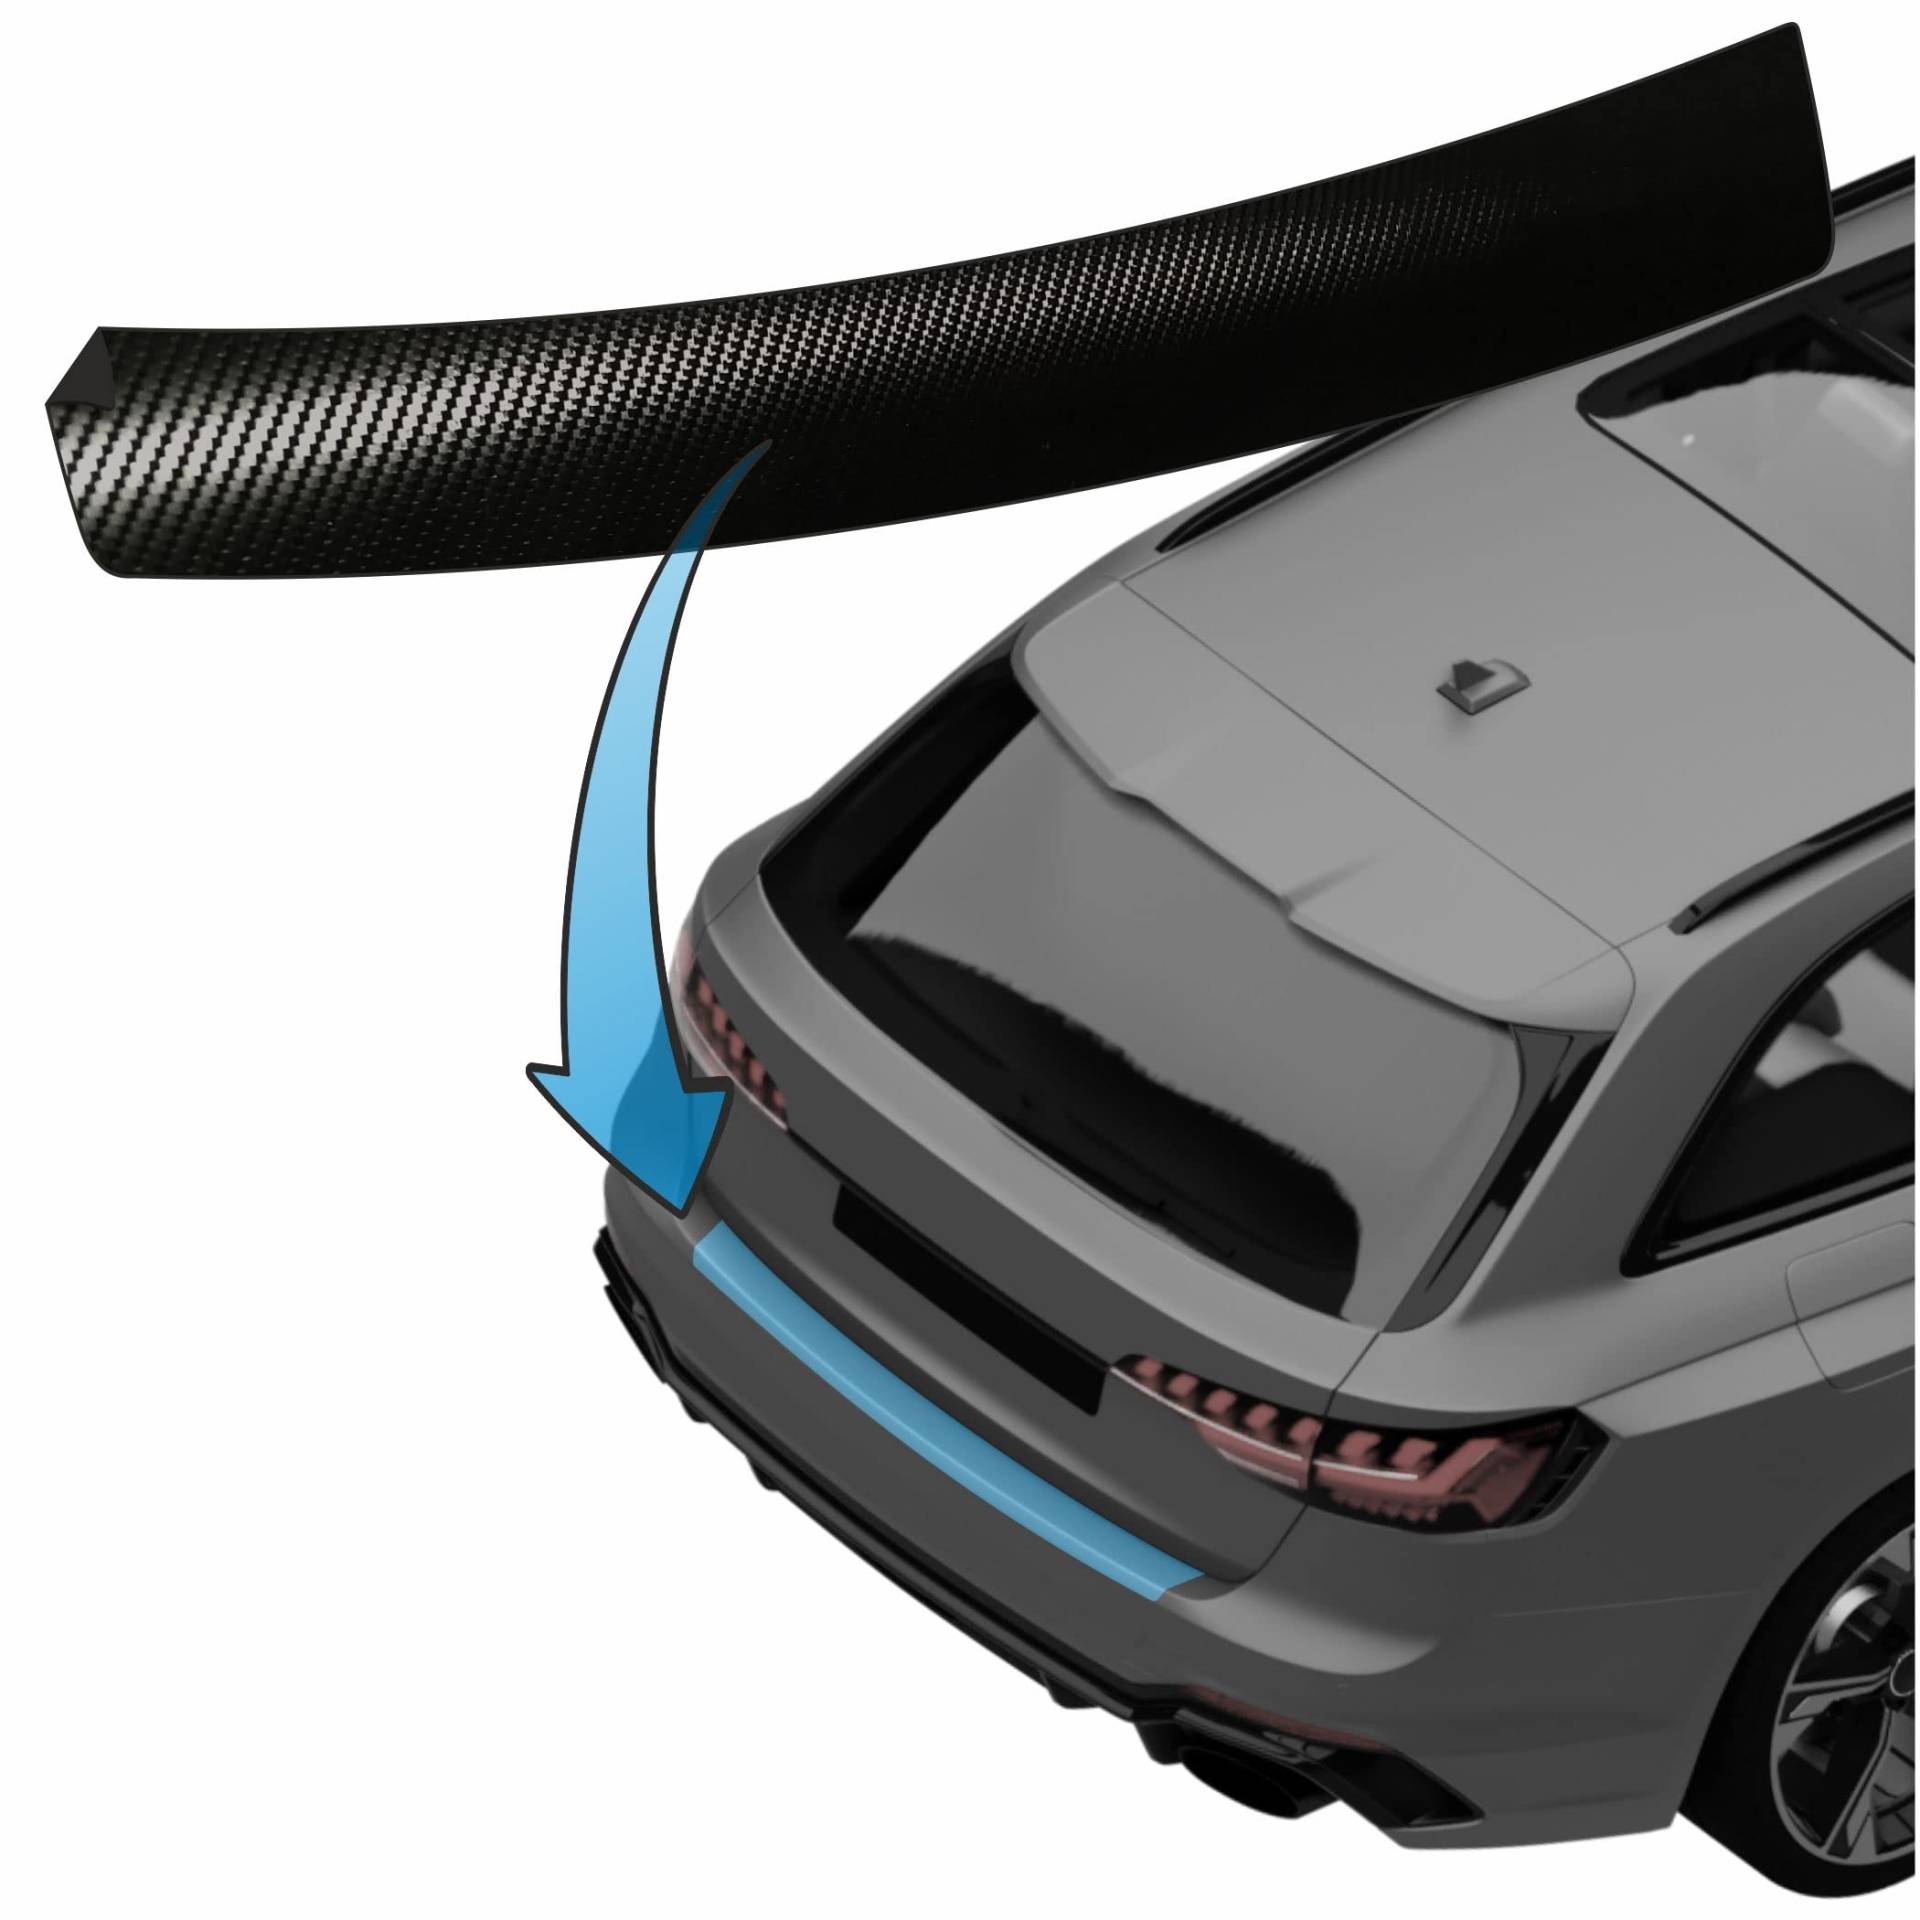 MisterLacky – Lackschutzfolie mit Rakel als Ladekantenschutz Folie passend für Hyundai Veloster ab BJ 2011-2018 in 3D Carbon schwarz (160µm) von Lackschutzshop